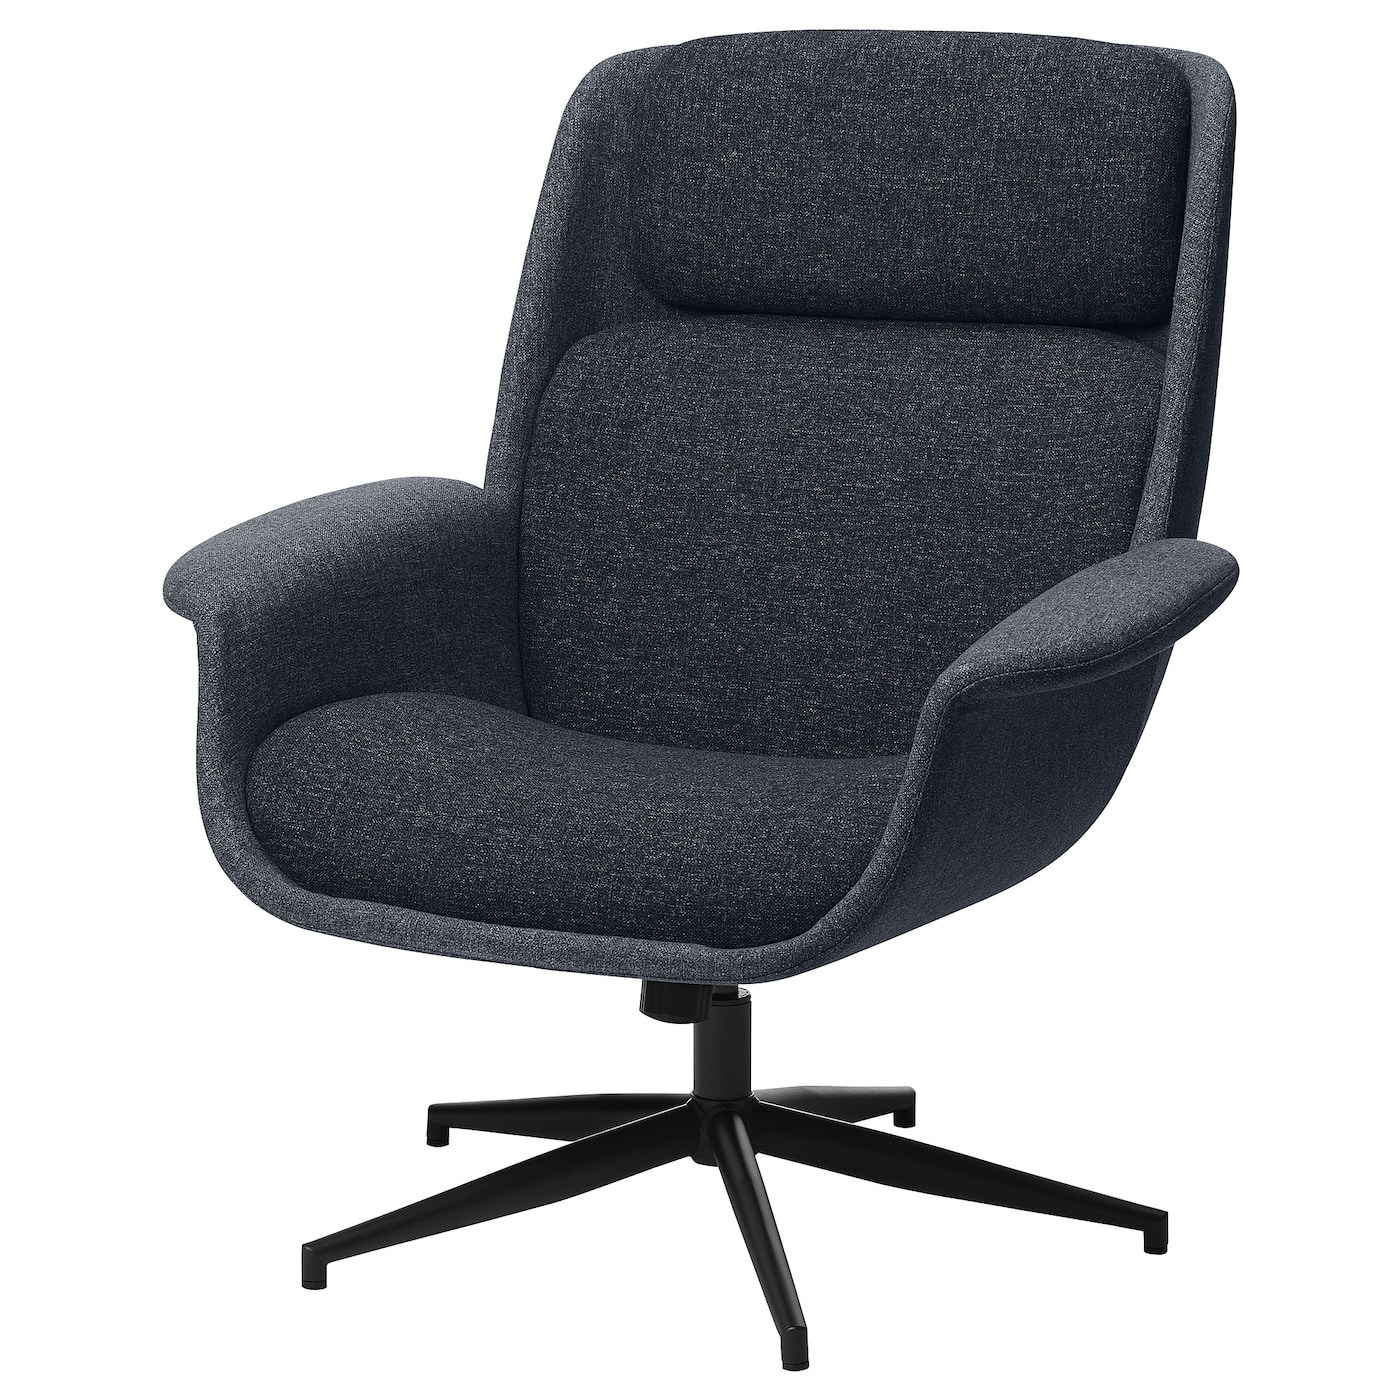 ЭЛЕБИ Вращающееся кресло, Гуннаред средний серый/темно-серый ÄLEBY IKEA офисное компьютерное кресло для босса подъемное вращающееся кресло для сотрудников простое многофункциональное кресло спинка с регулиру